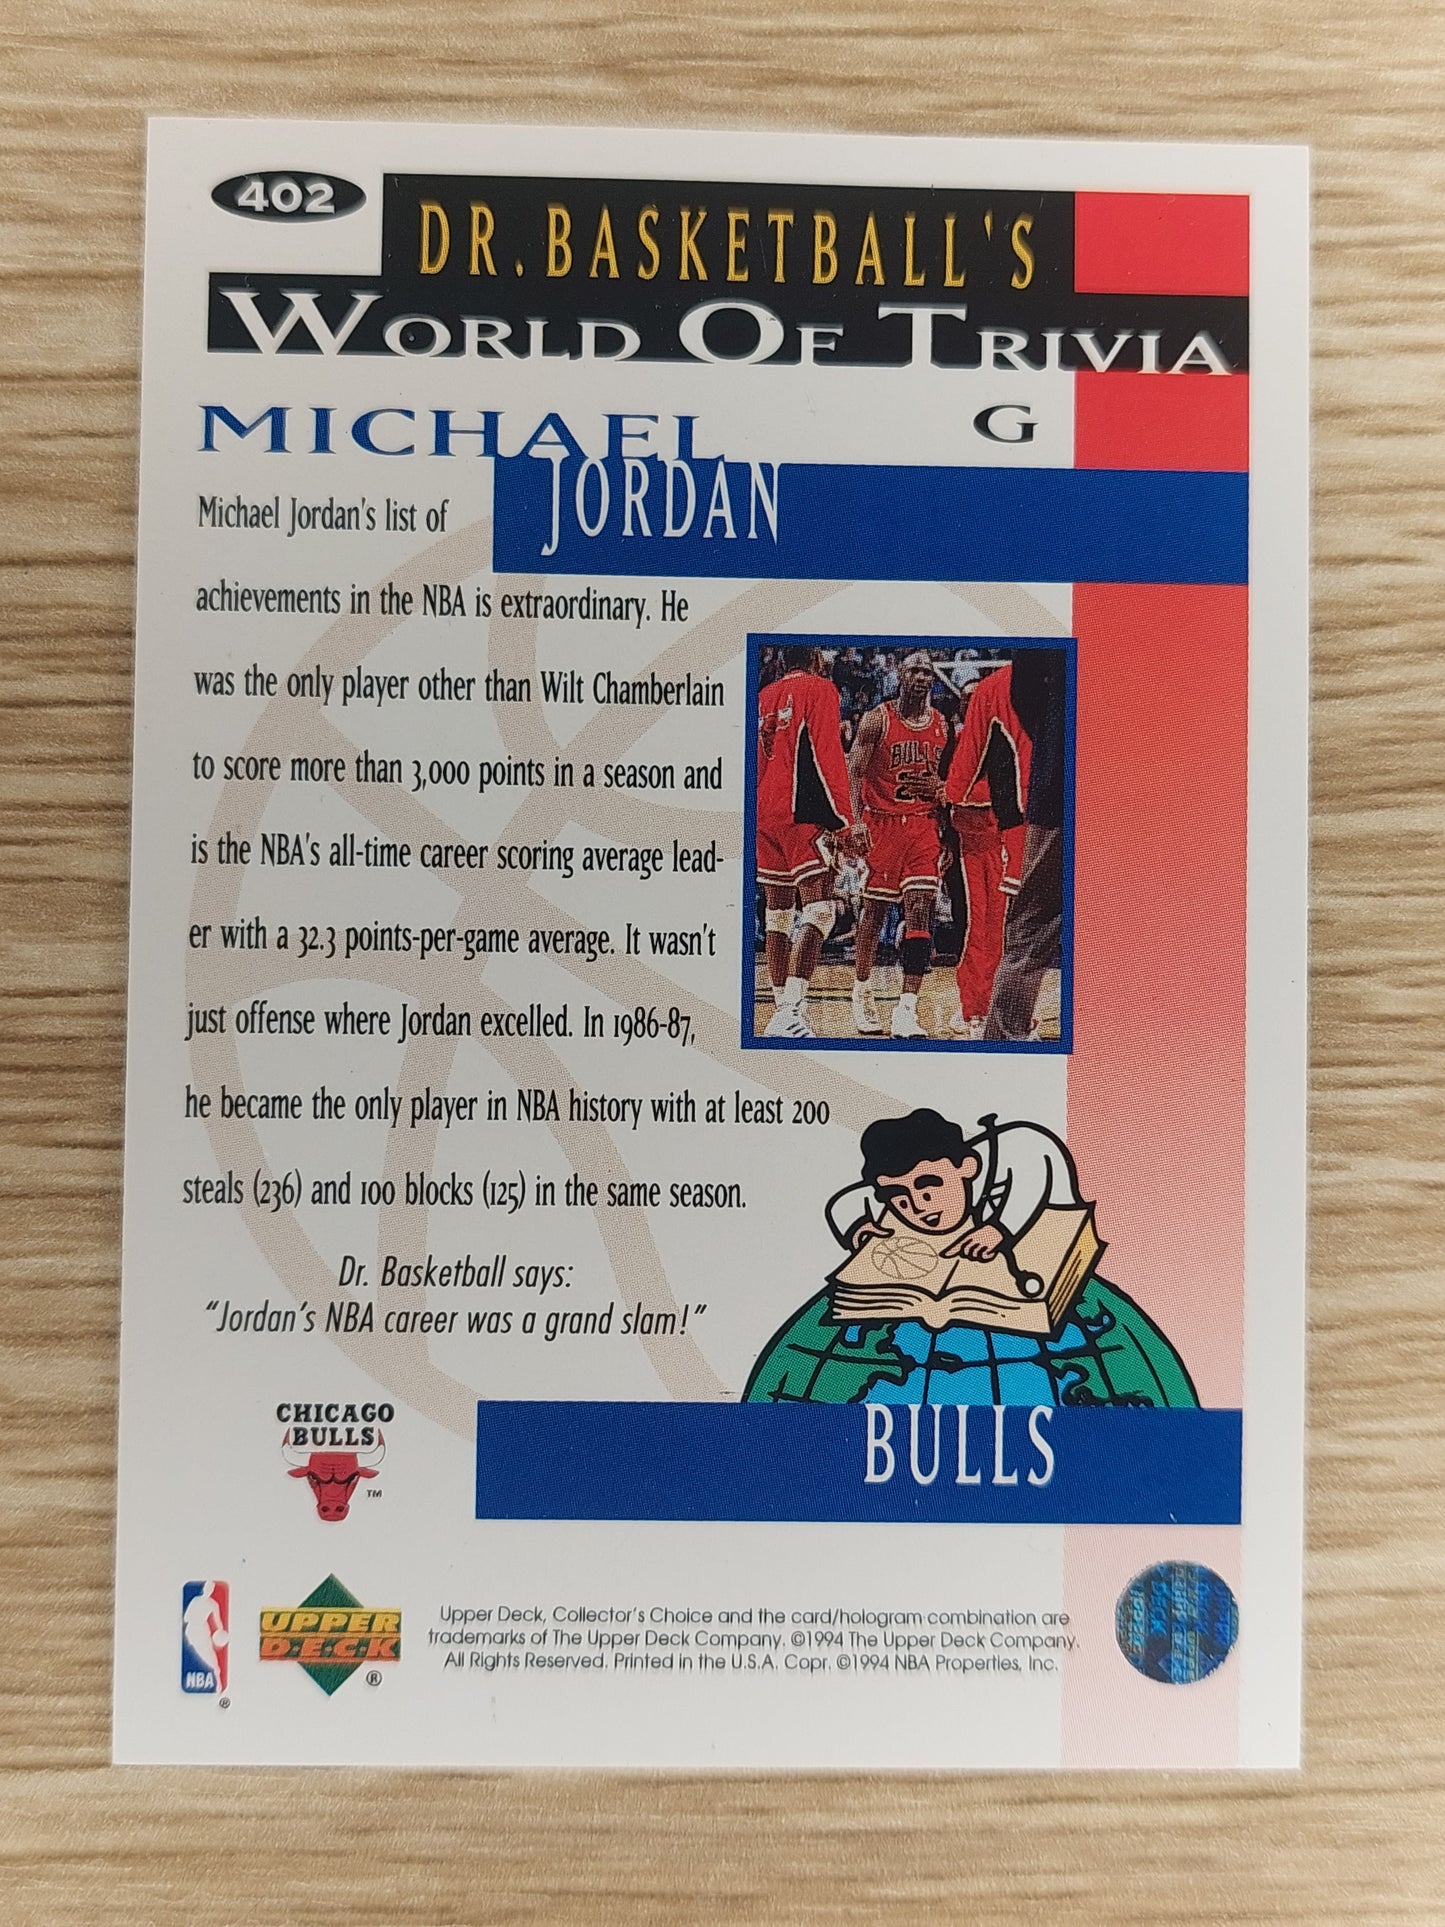 1994 Upper Deck Collectors Choice #402 Michael Jordan Gold Signature Card